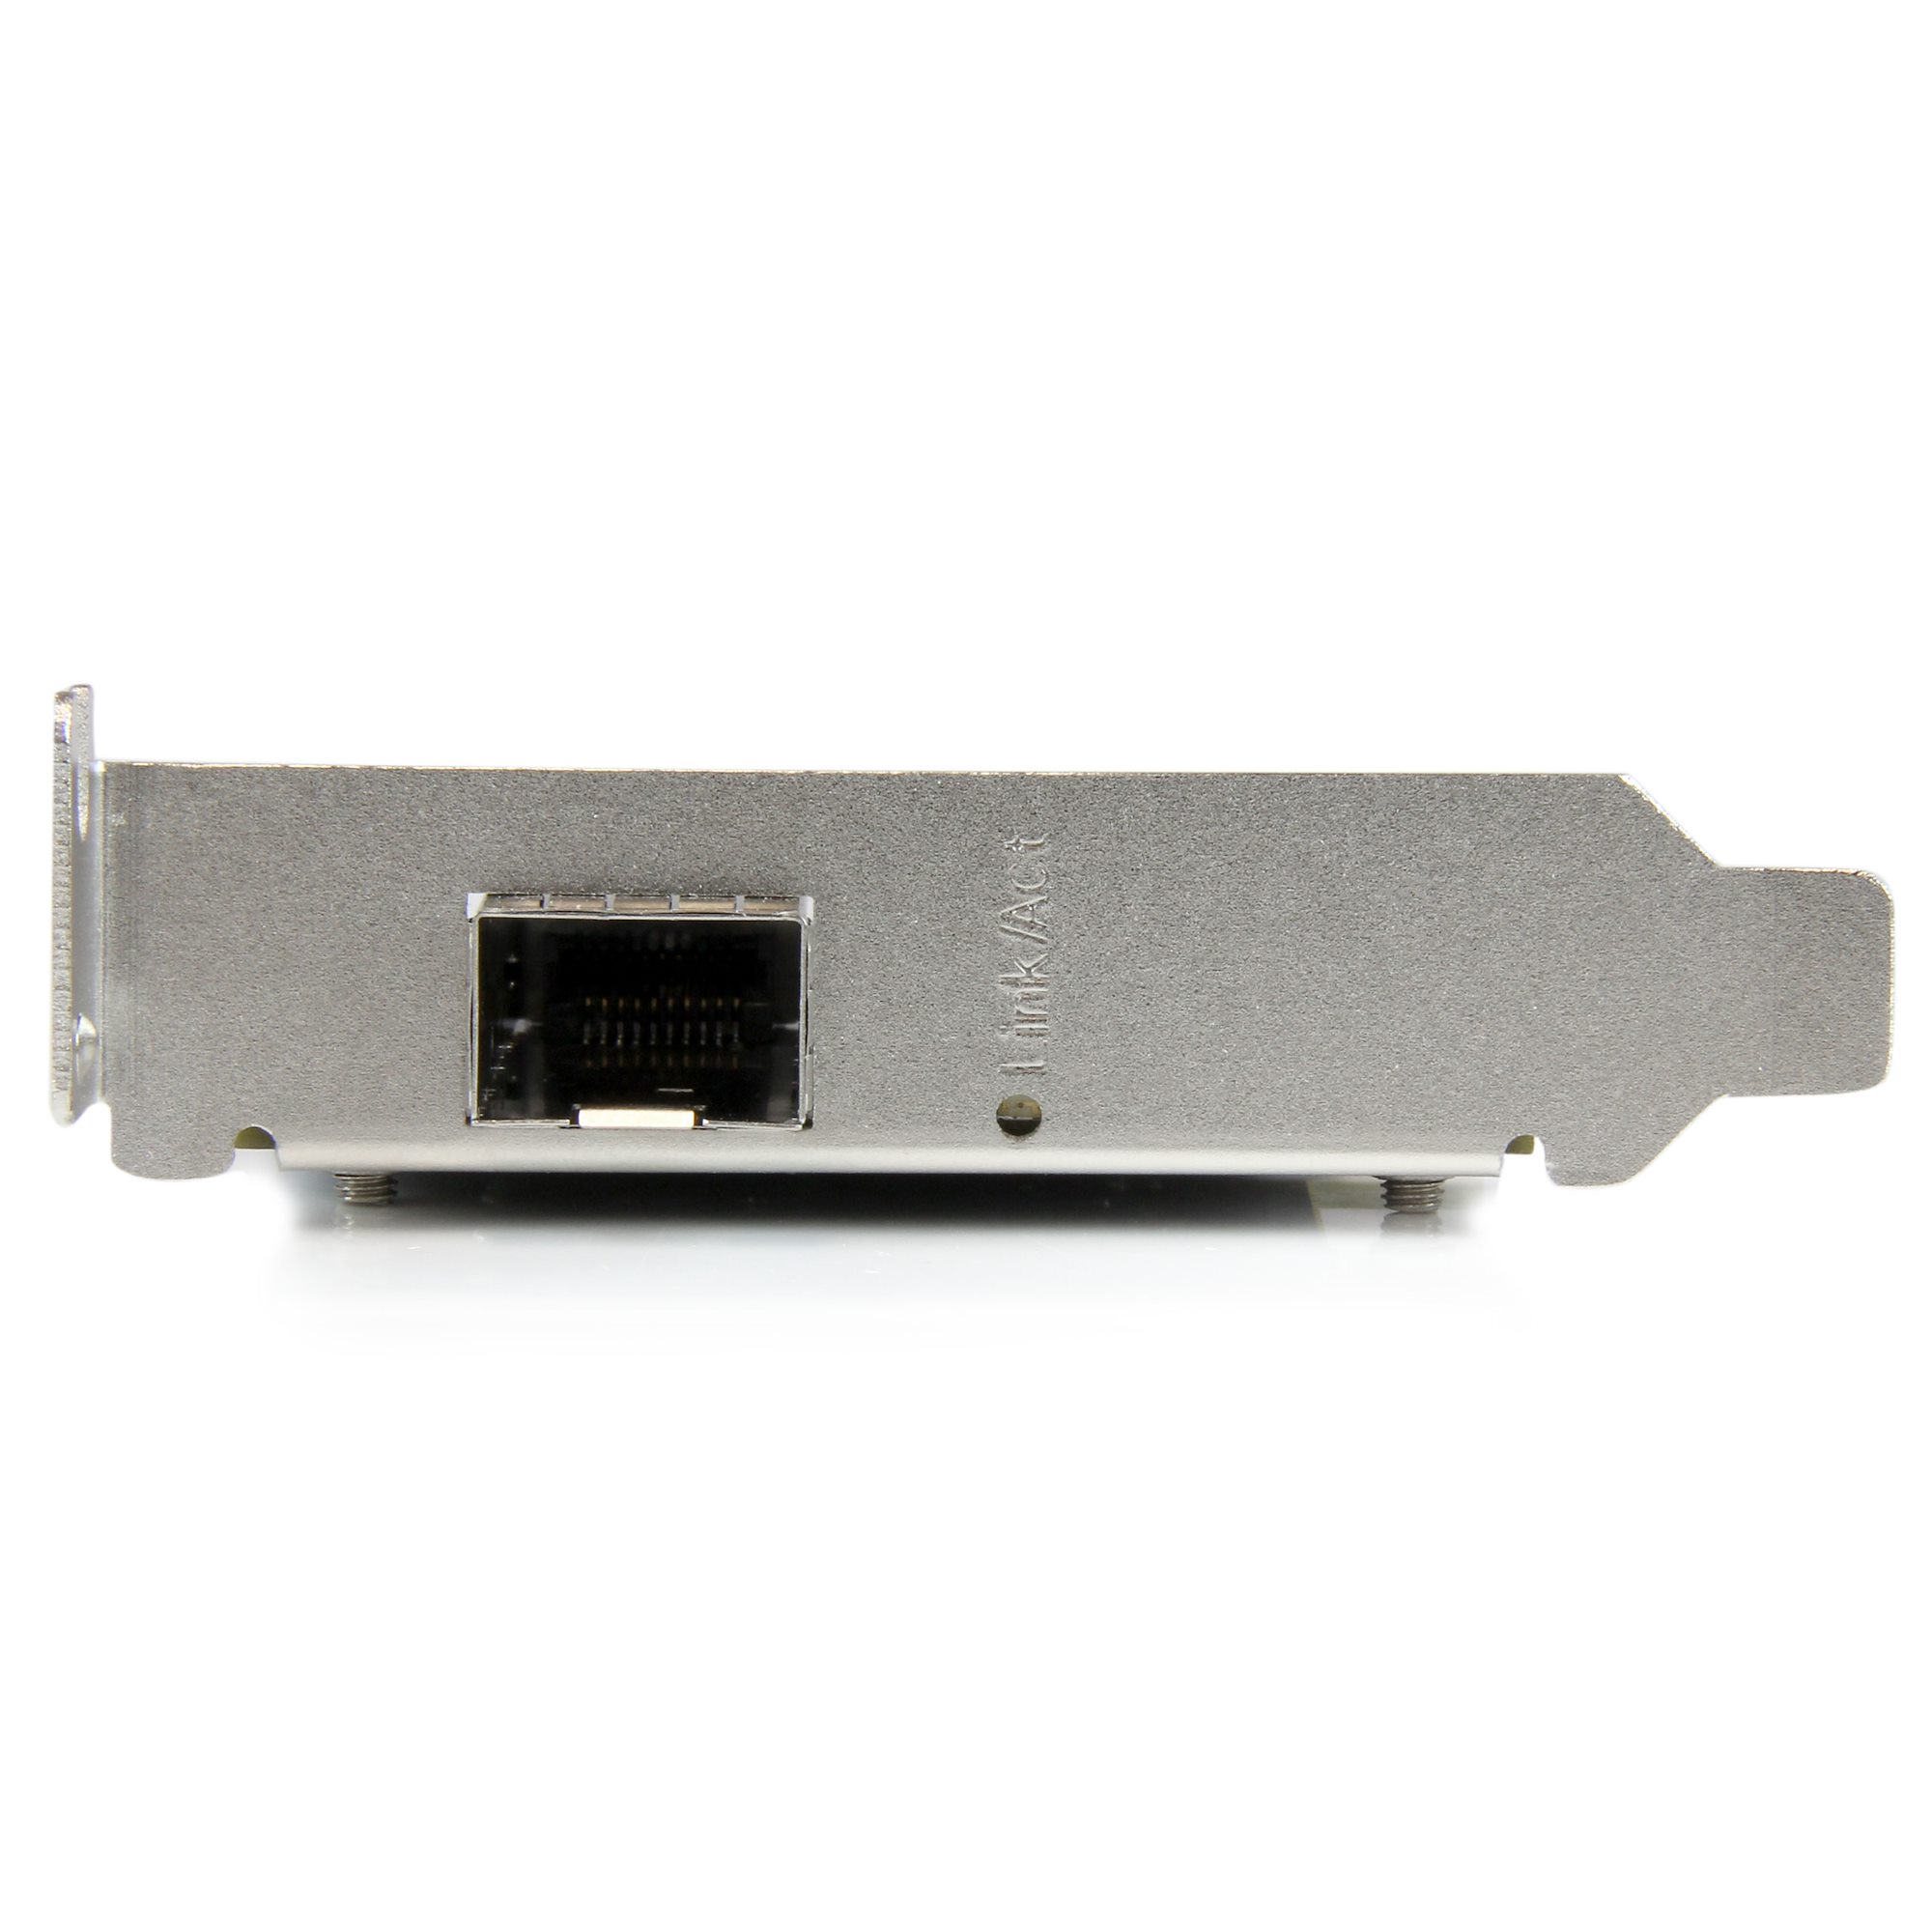 10ギガビットイーサネットSFP+対応 PCI Express LANカード 光ファイバーネットワークNICアダプタ